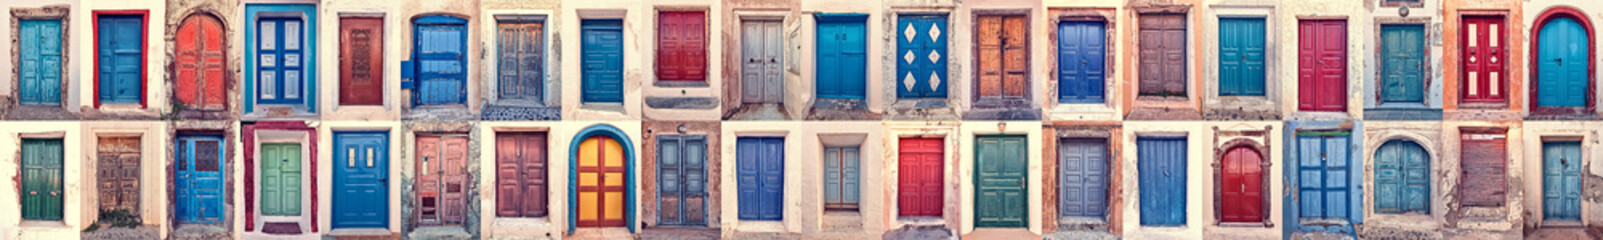 doors of santorini